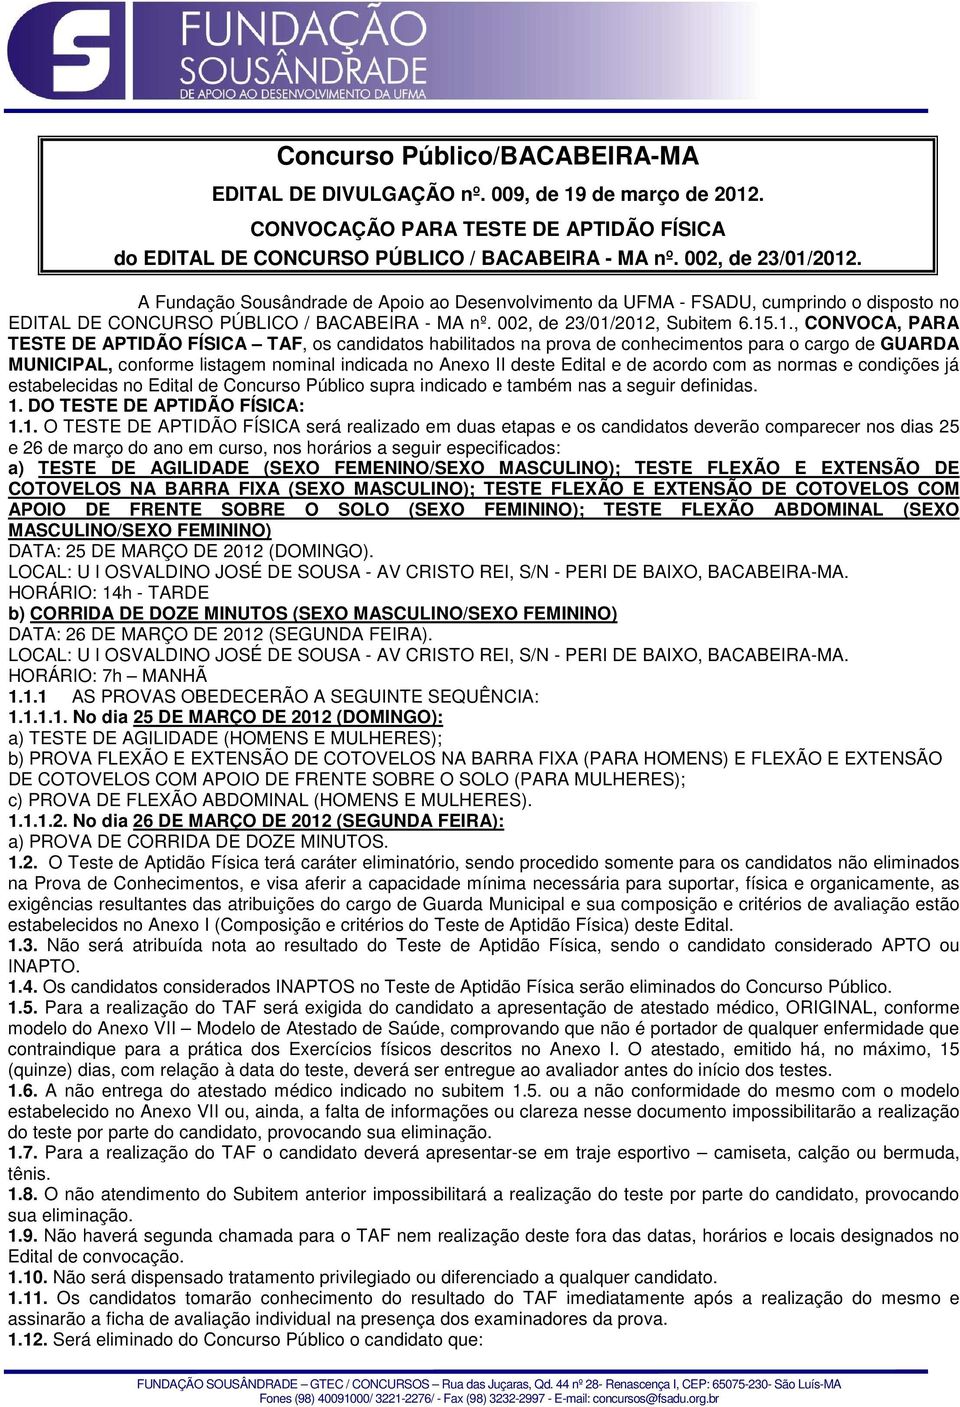 2012, Subitem 6.15.1., CONVOCA, PARA TESTE DE APTIDÃO FÍSICA TAF, os candidatos habilitados na prova de conhecimentos para o cargo de GUARDA MUNICIPAL, conforme listagem nominal indicada no Anexo II